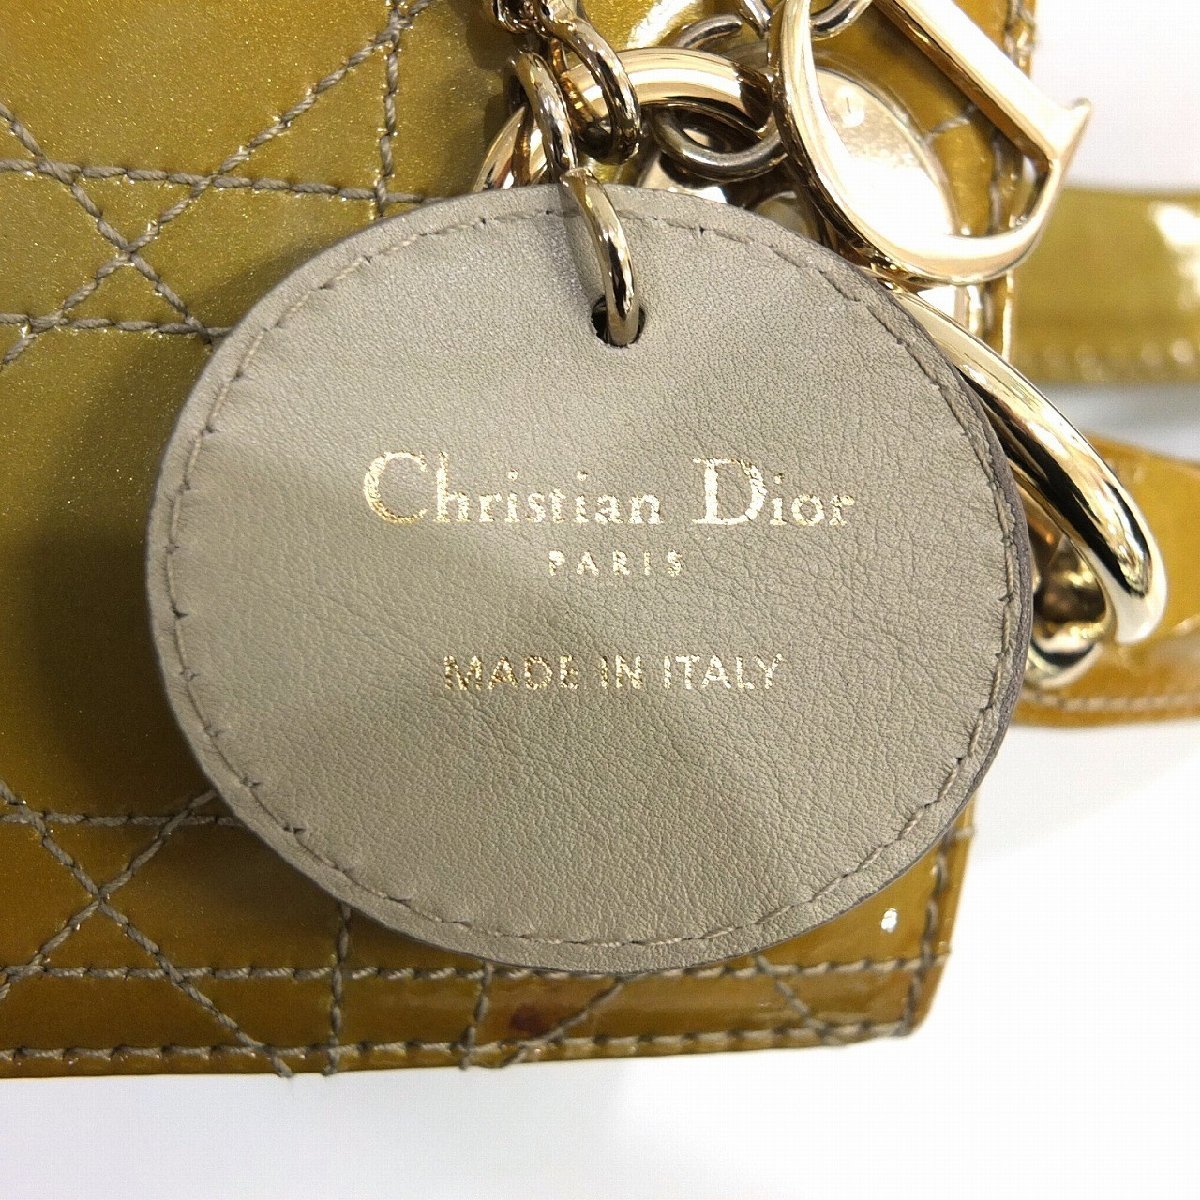 Chiristian Dior クリスチャンディオール レディディオール カナージュ パテントレザー 2WAYバッグ ゴールド金具 【中古】 JA-16549 - 4